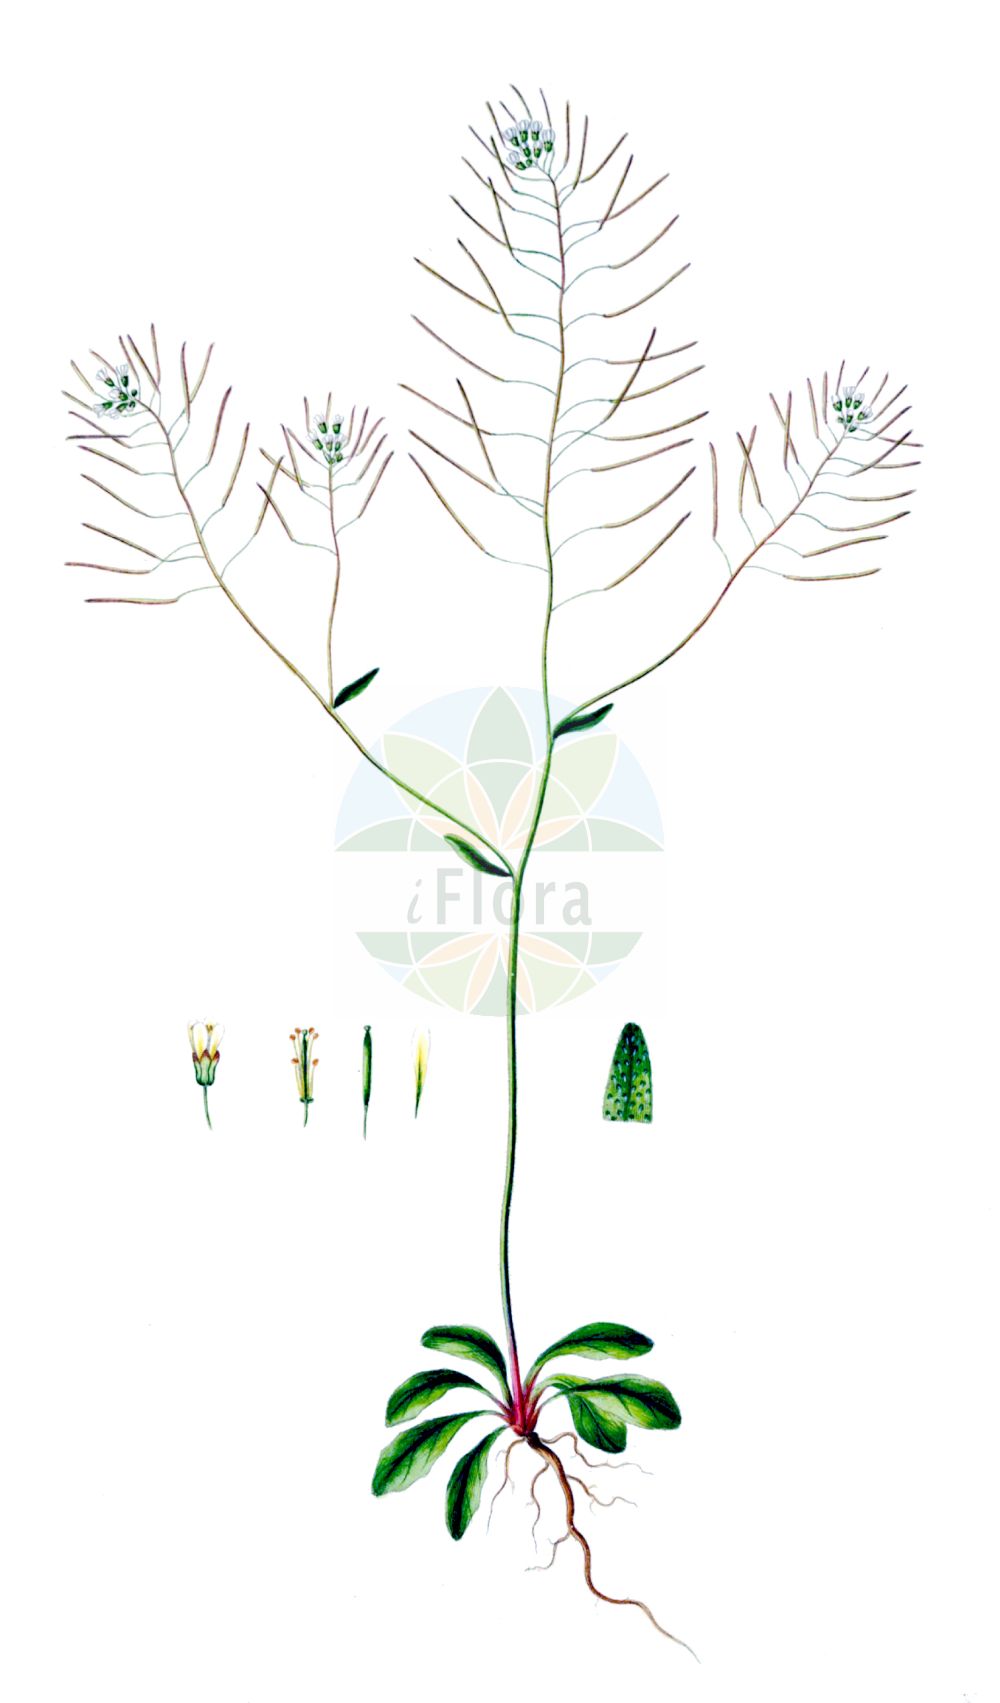 Historische Abbildung von Arabidopsis thaliana (Acker-Schmalwand - Thale Cress). Das Bild zeigt Blatt, Bluete, Frucht und Same. ---- Historical Drawing of Arabidopsis thaliana (Acker-Schmalwand - Thale Cress). The image is showing leaf, flower, fruit and seed.(Arabidopsis thaliana,Acker-Schmalwand,Thale Cress,Arabidopsis thaliana,Arabis thaliana,Sisymbrium thalianum,Stenophragma thalianum,Acker-Schmalwand,Thale Cress,Common Wallcress,Mouse-ear Cress,Arabidopsis,Schmalwand,Rockcress,Brassicaceae,Kreuzblütler,Cabbage family,Blatt,Bluete,Frucht,Same,leaf,flower,fruit,seed,Oeder (1761-1883))